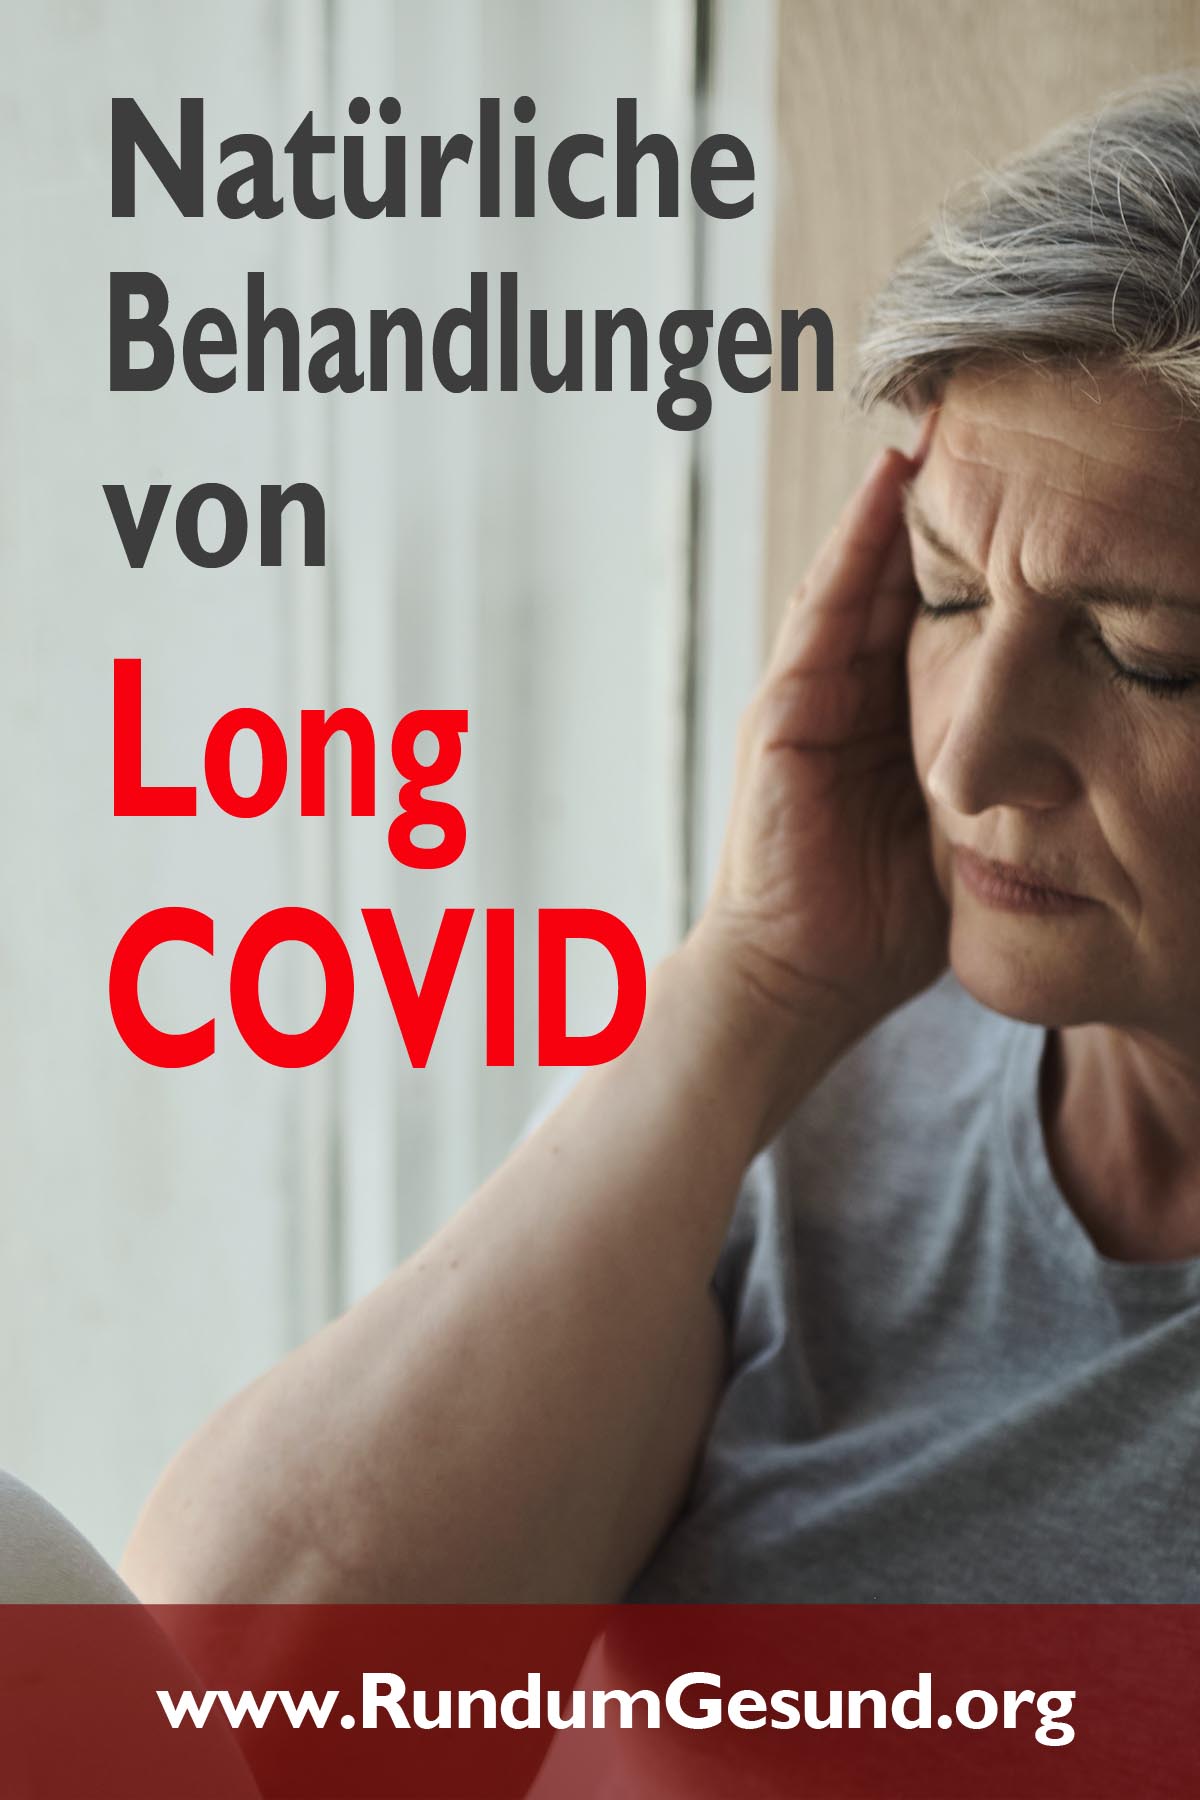 Natürliche Behandlungen von Long COVID